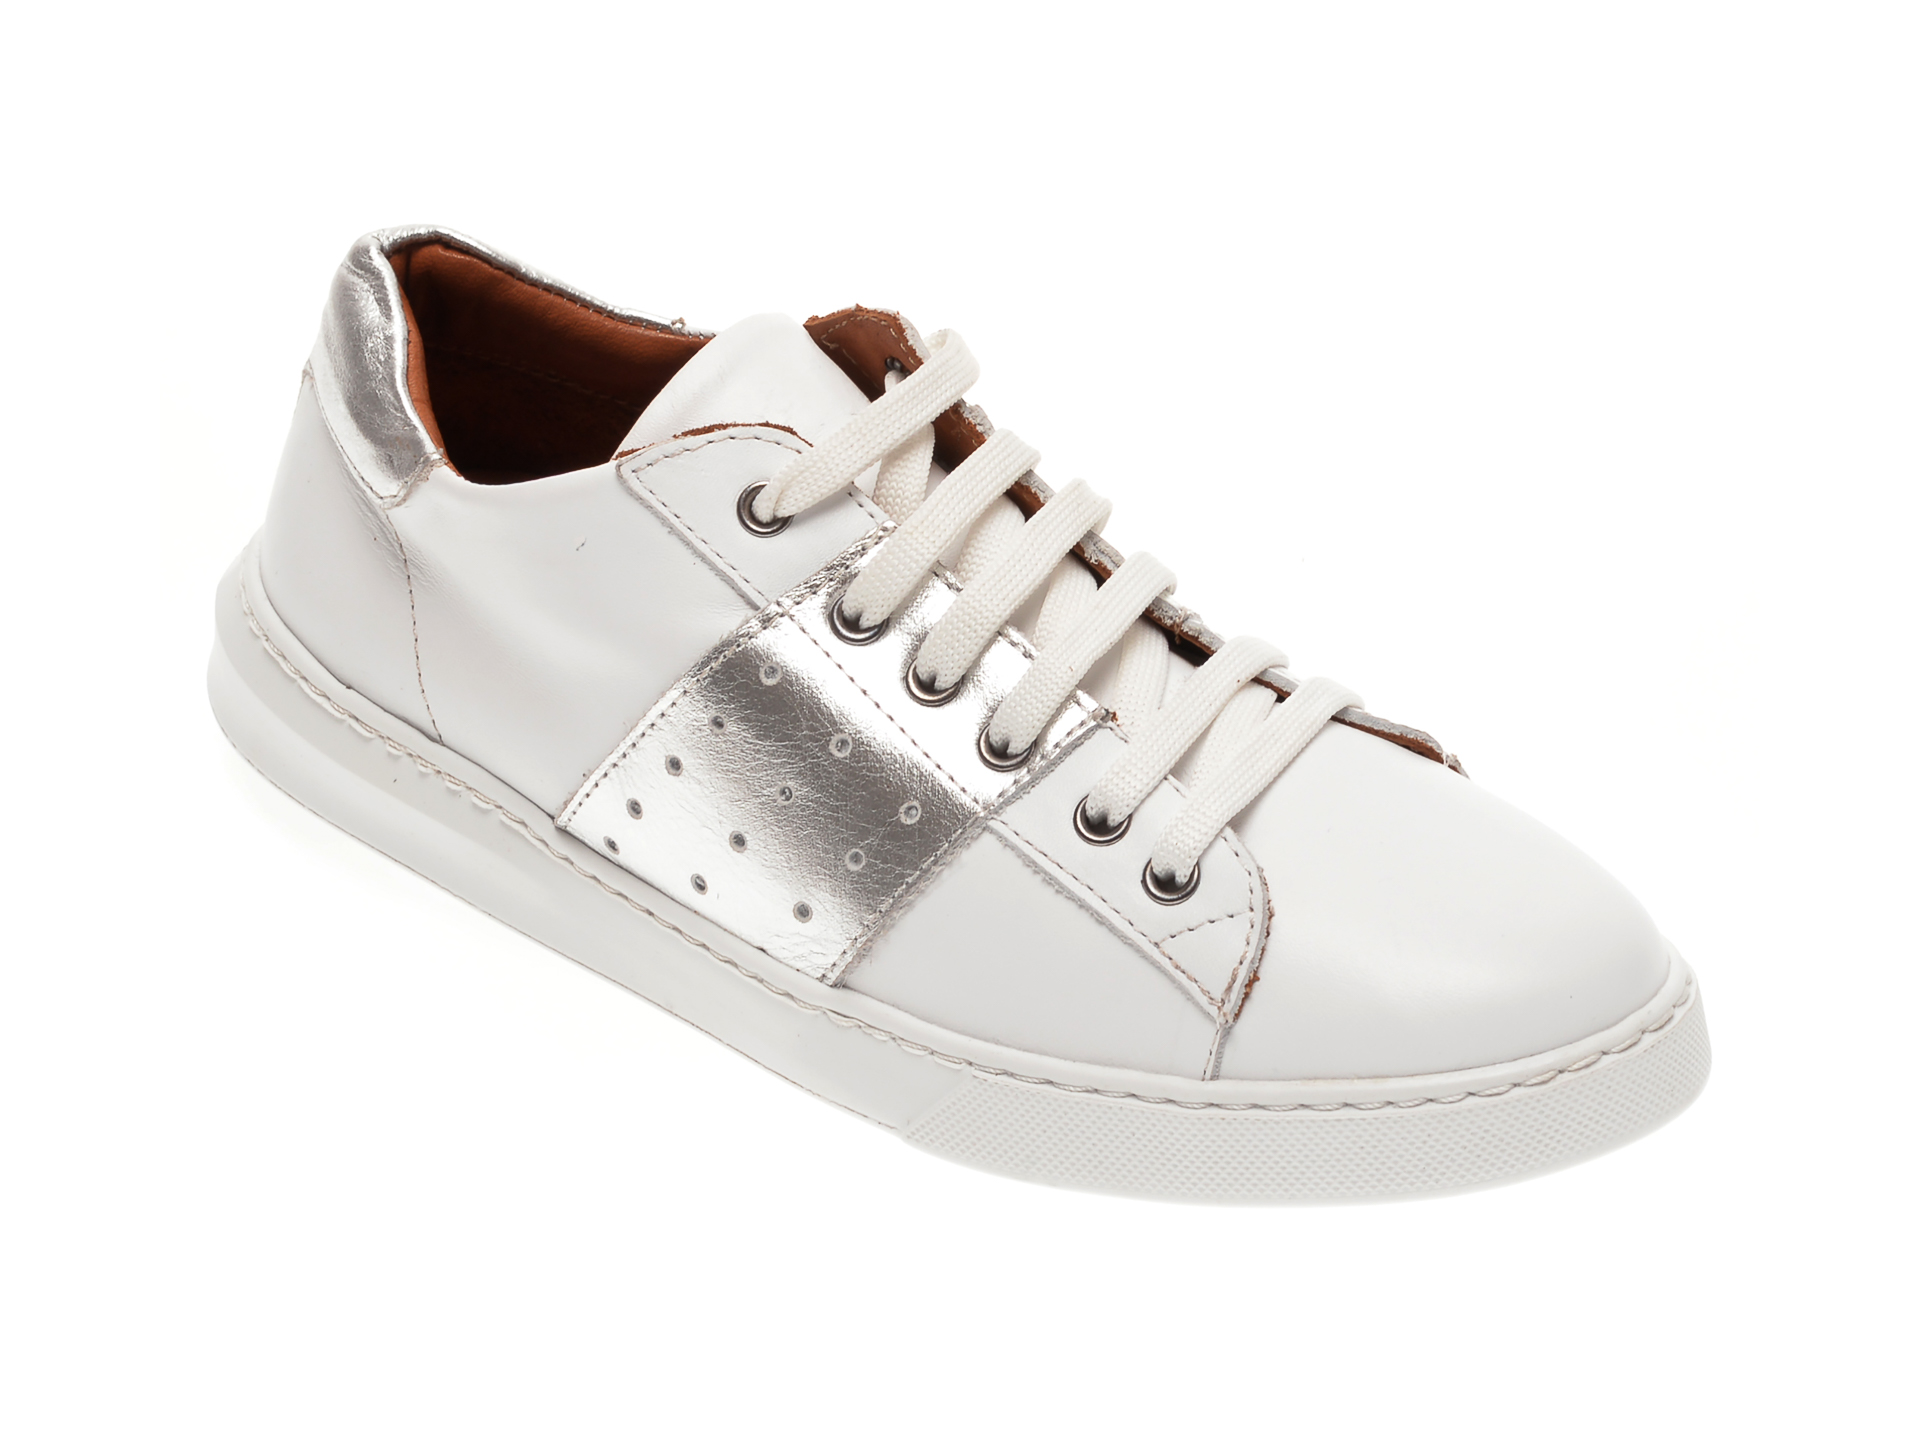 Pantofi BABOOS albi, 2303, din piele naturala